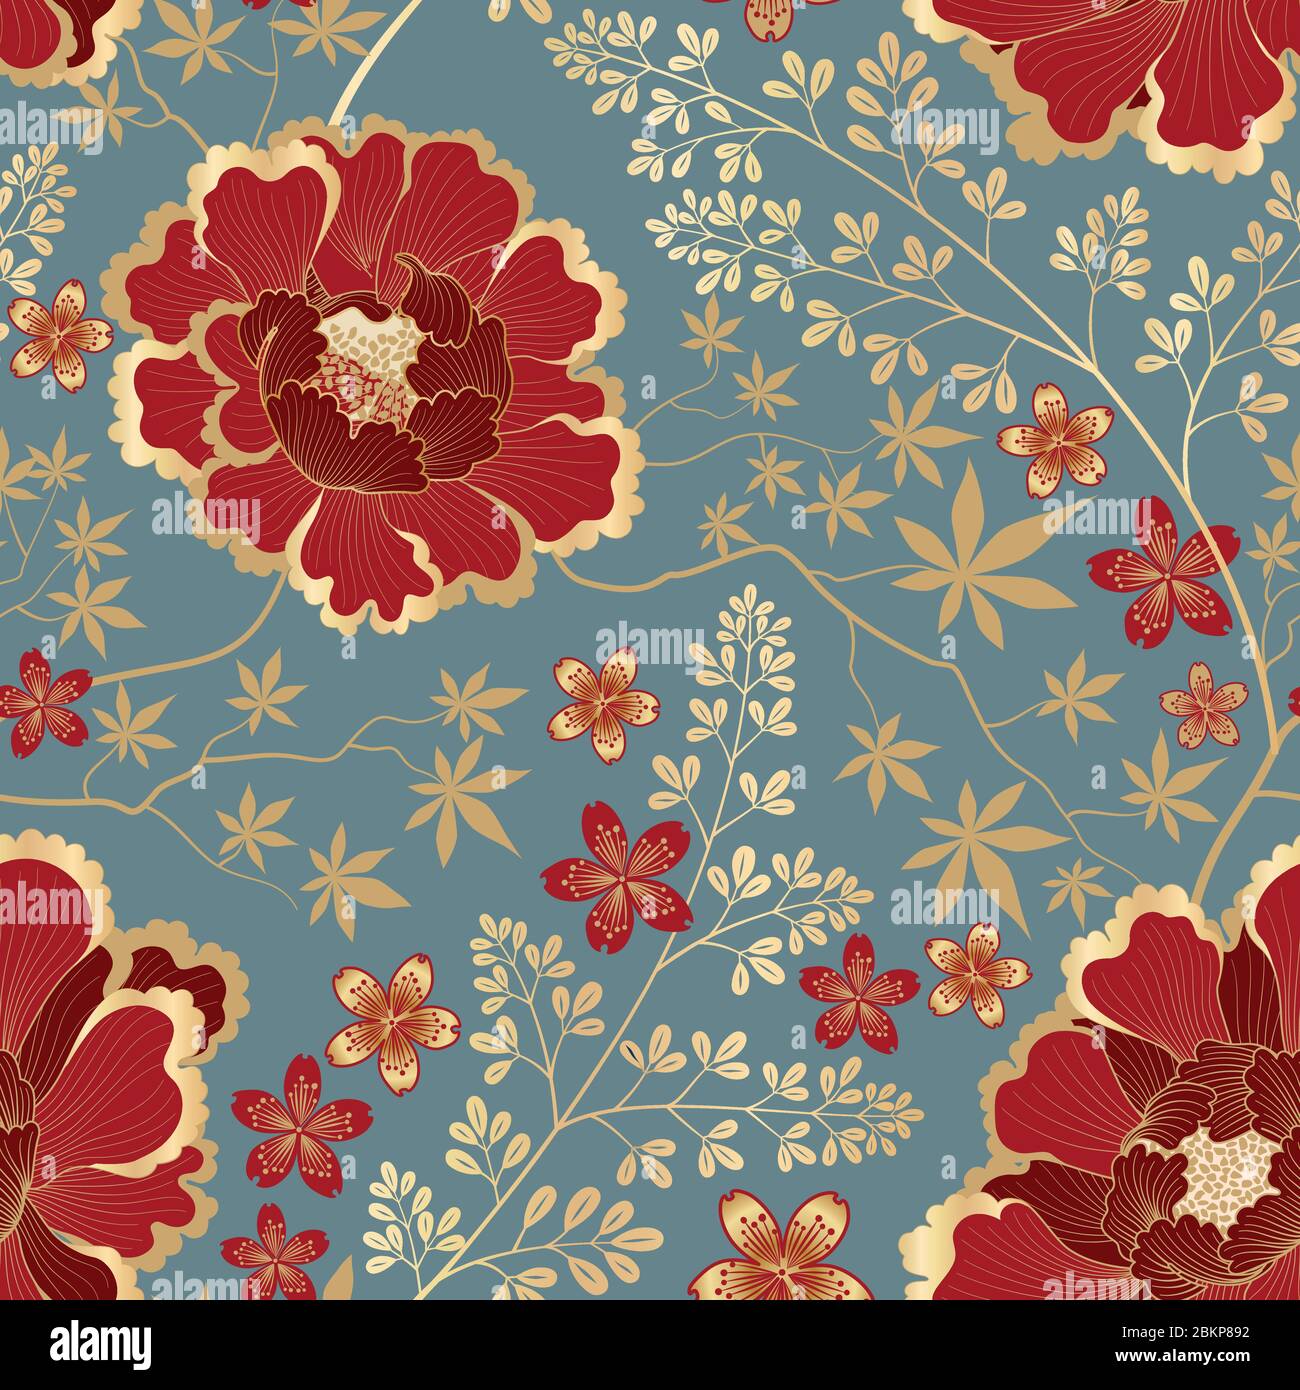 Florales Nahtloses Muster. Blumenhintergrund. Florieren Zierfliesentapete mit Blumen im fernöstlichen orientalischen Stil. Stock Vektor